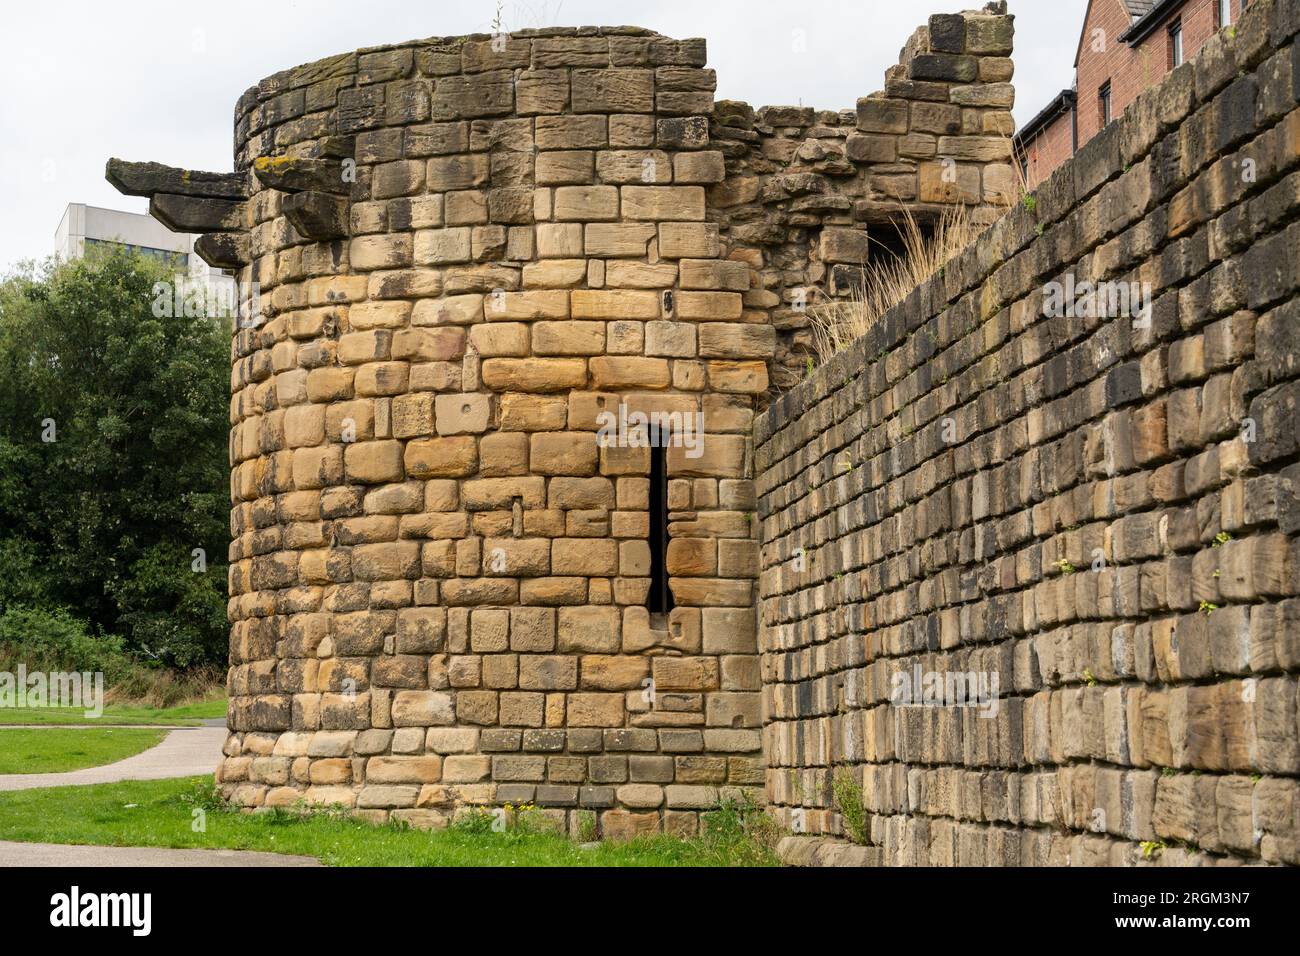 Der Durham Tower - Teil der Stadtmauer in der Stadt Newcastle upon Tyne, Großbritannien - eine mittelalterliche Verteidigungsmauer, Ende des 13. Jahrhunderts. Stockfoto